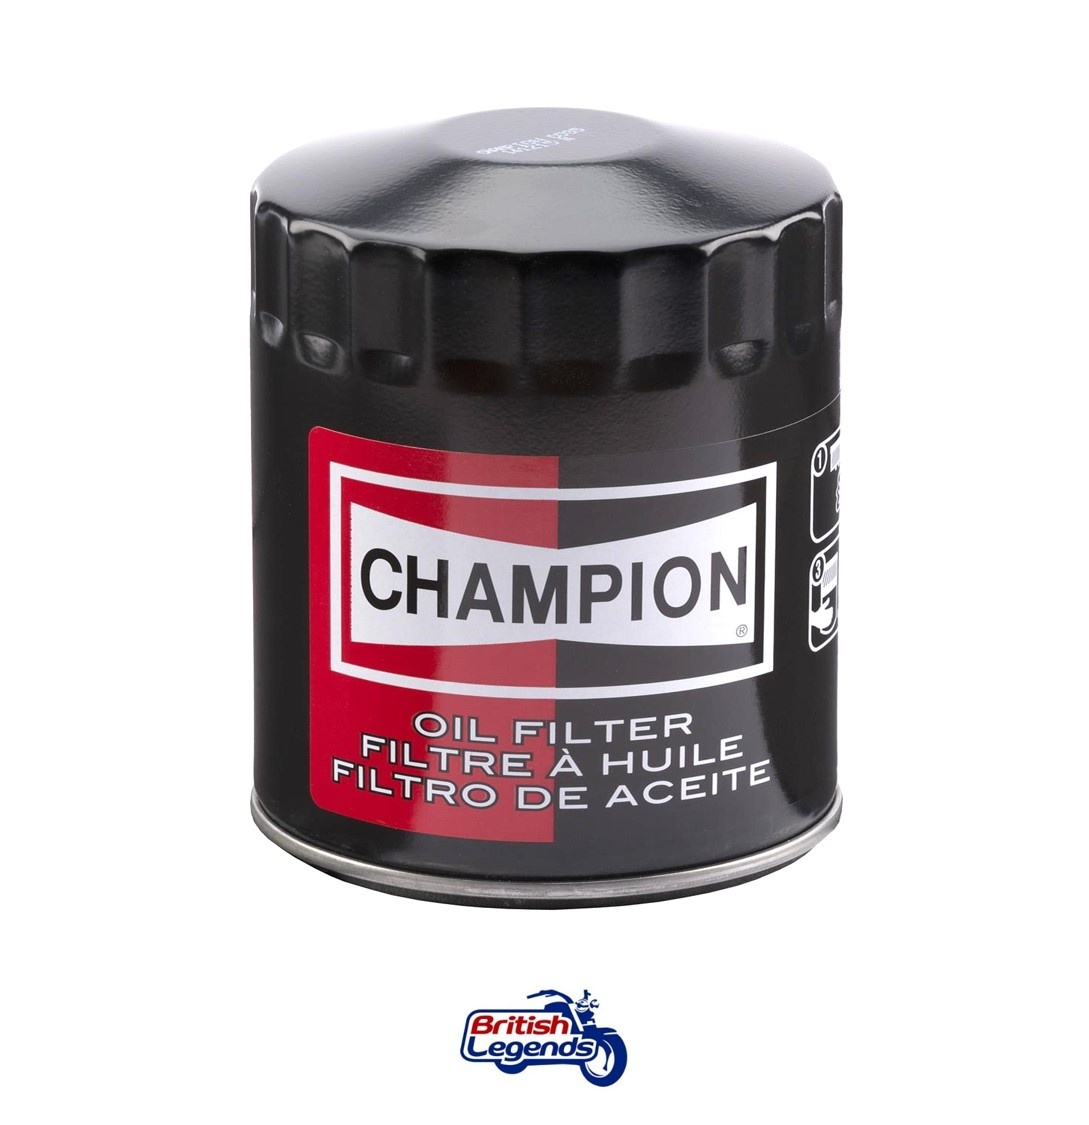 Filtre à huile Champion pour Kawasaki W650 et W800